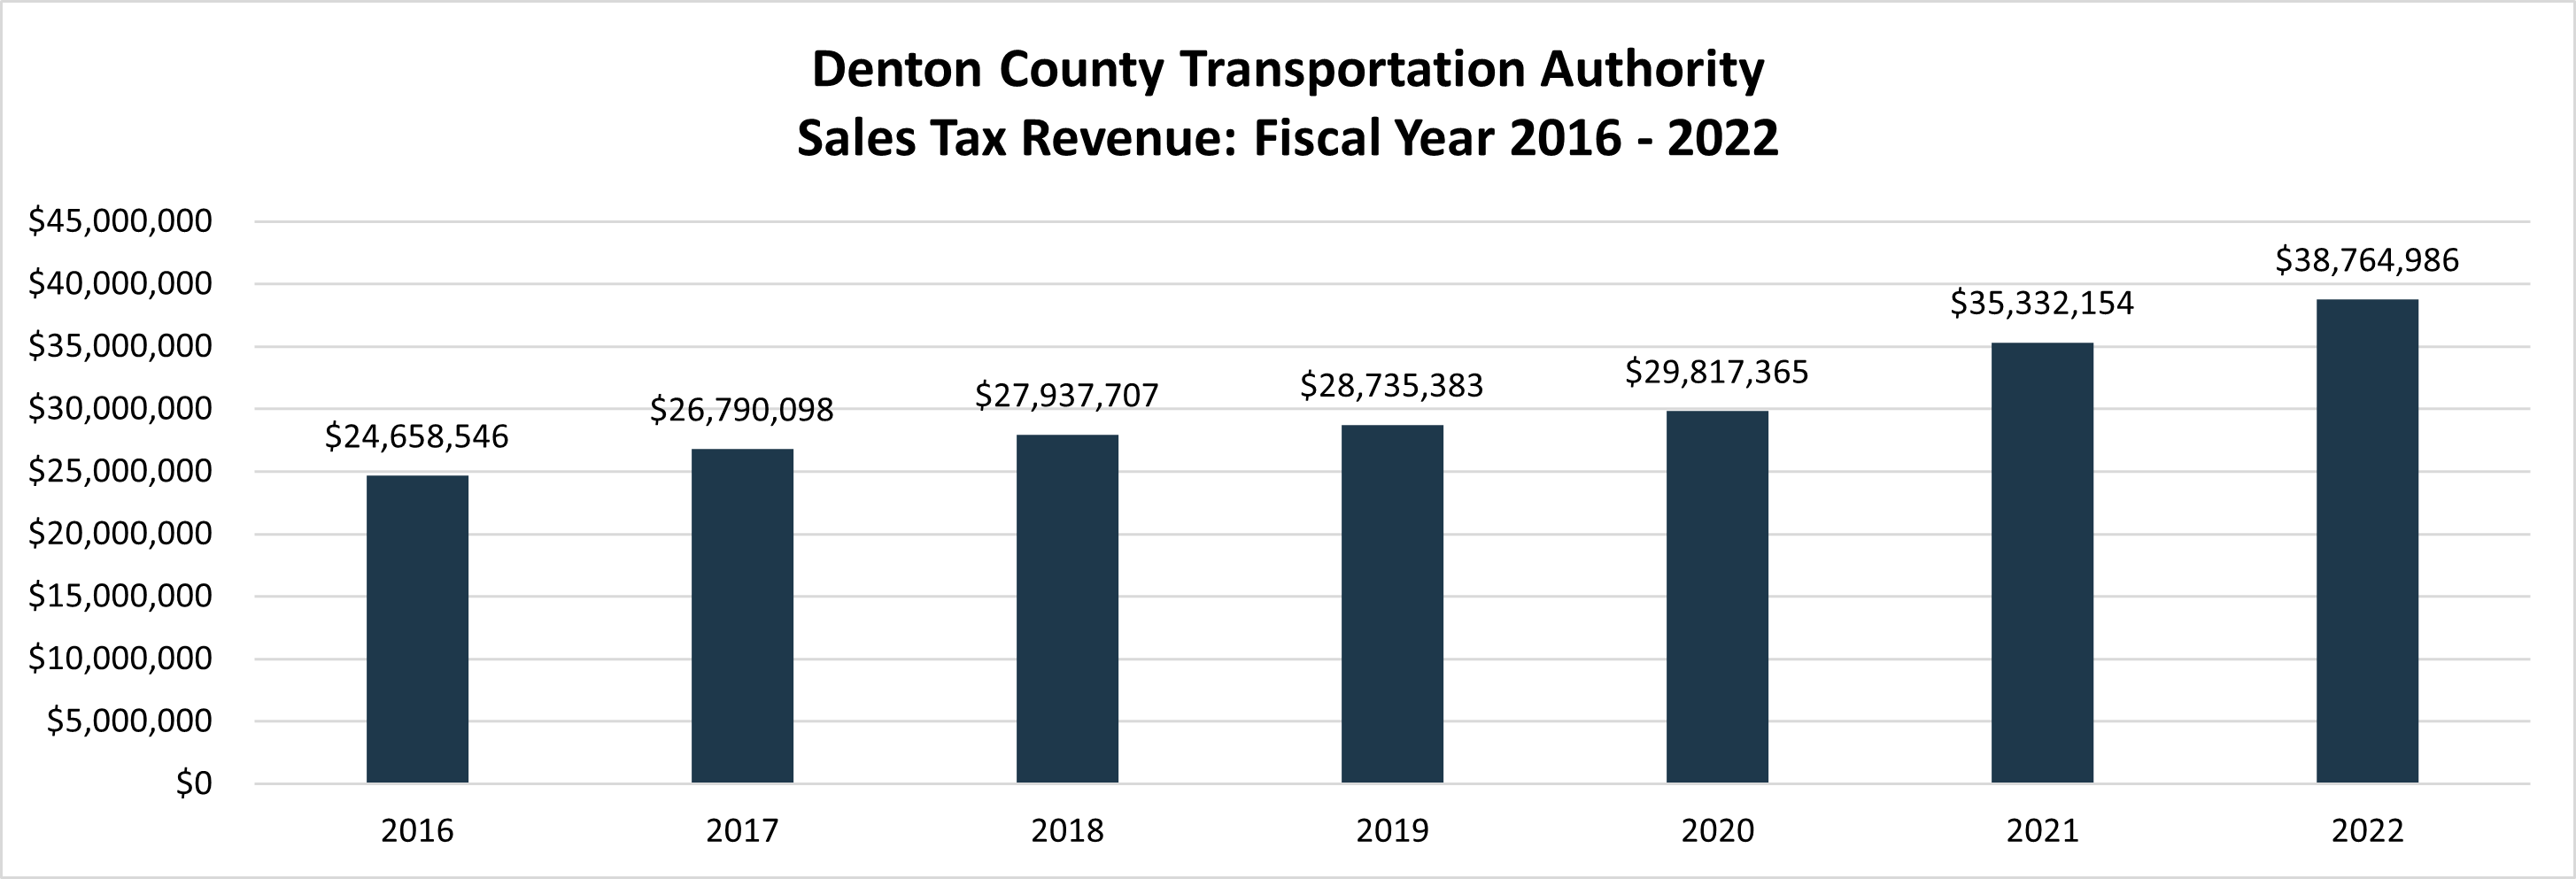 DCTA Sales Tax Revenue 2016 to 2022